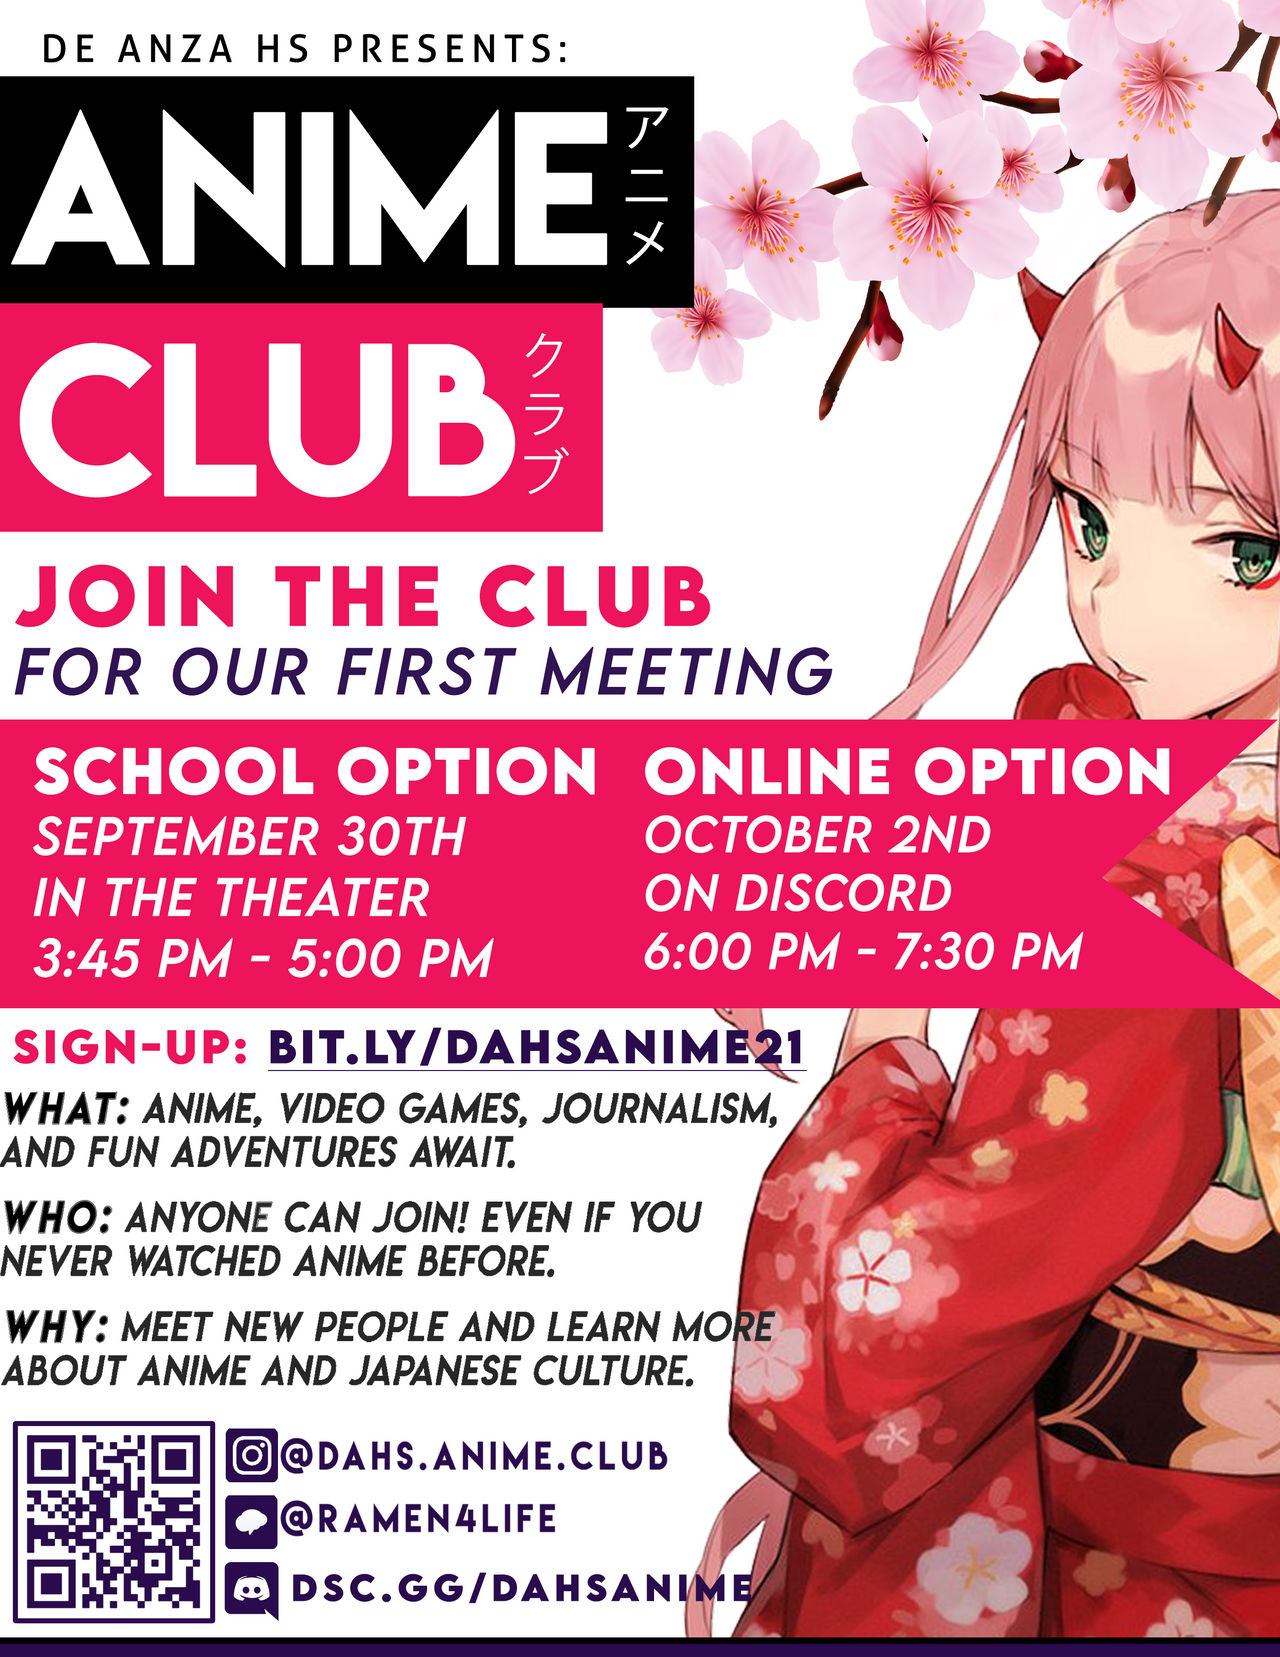 Anime flyer ideas (1) by JusrDarrel on DeviantArt